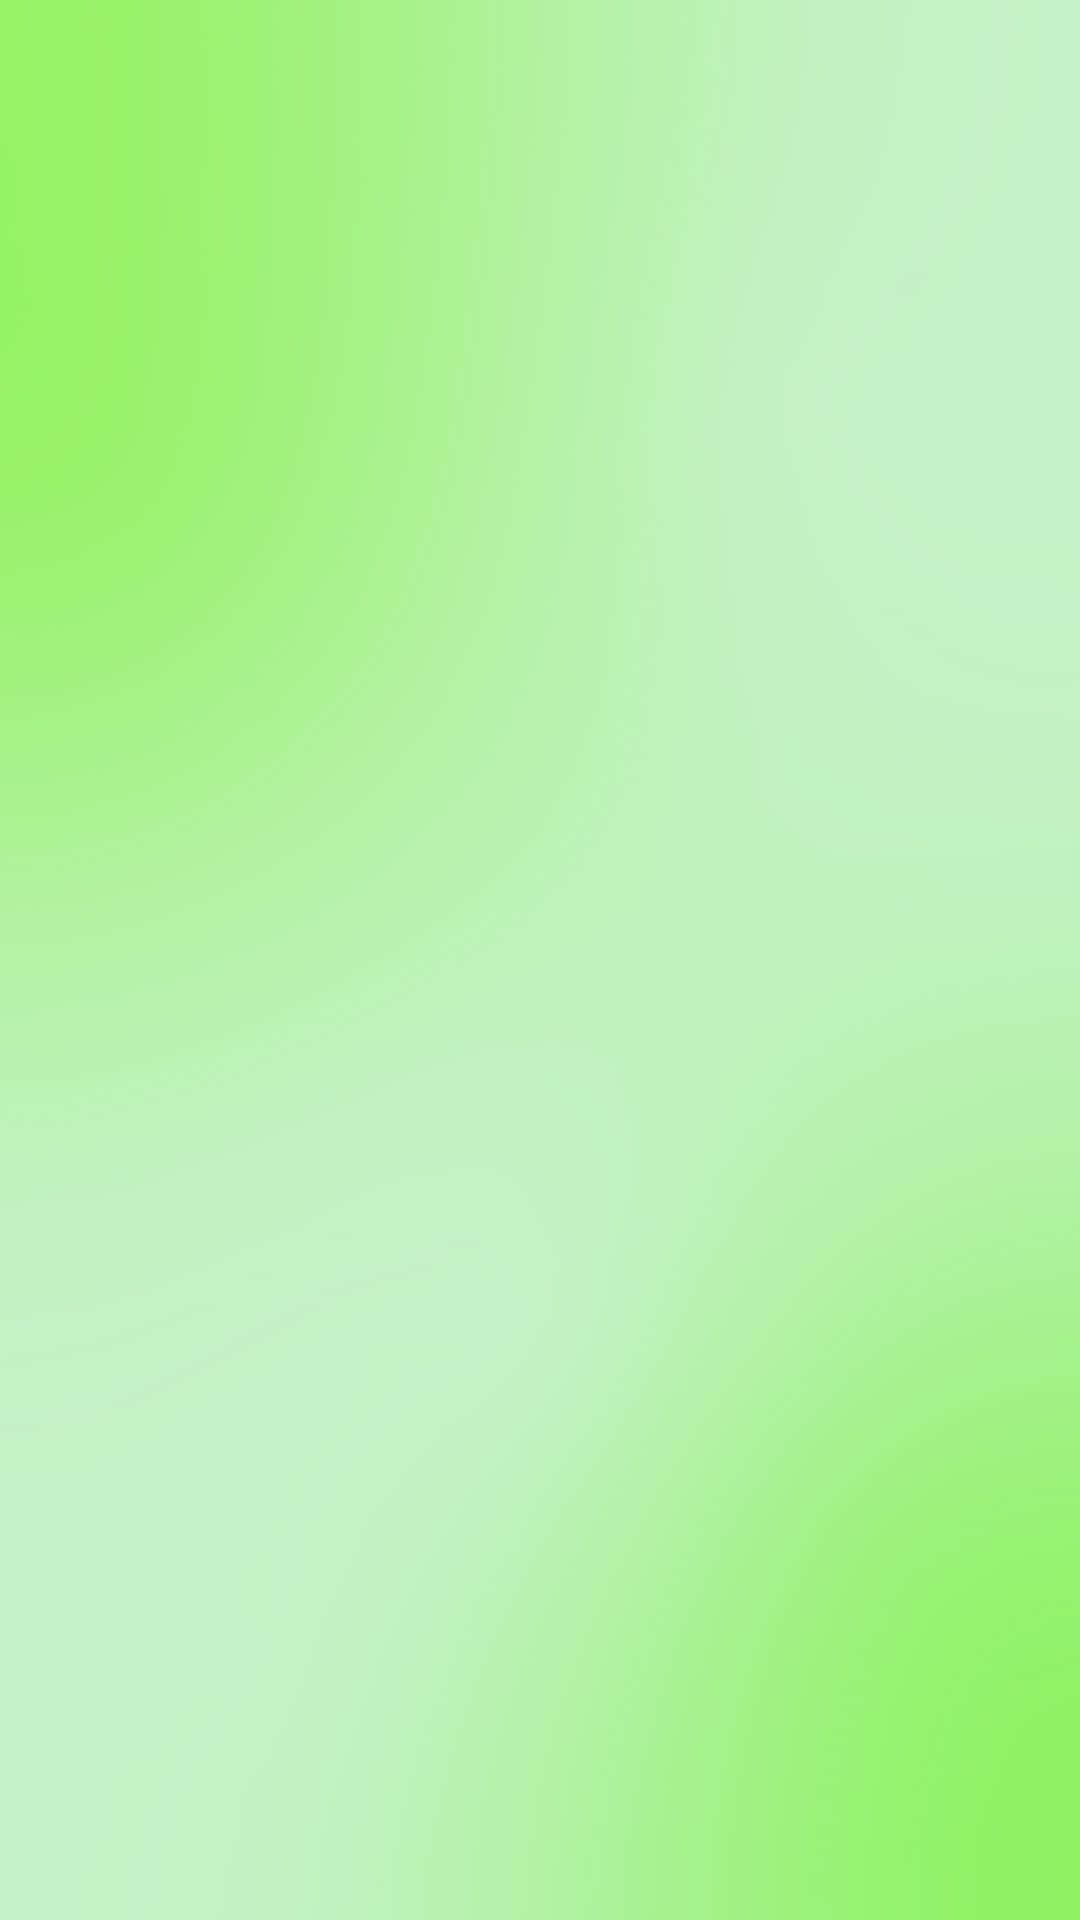 Ljusgröngradient Bakgrund Med Hög Färgkvalitet För Datorn Eller Mobilens Bakgrundsbild.